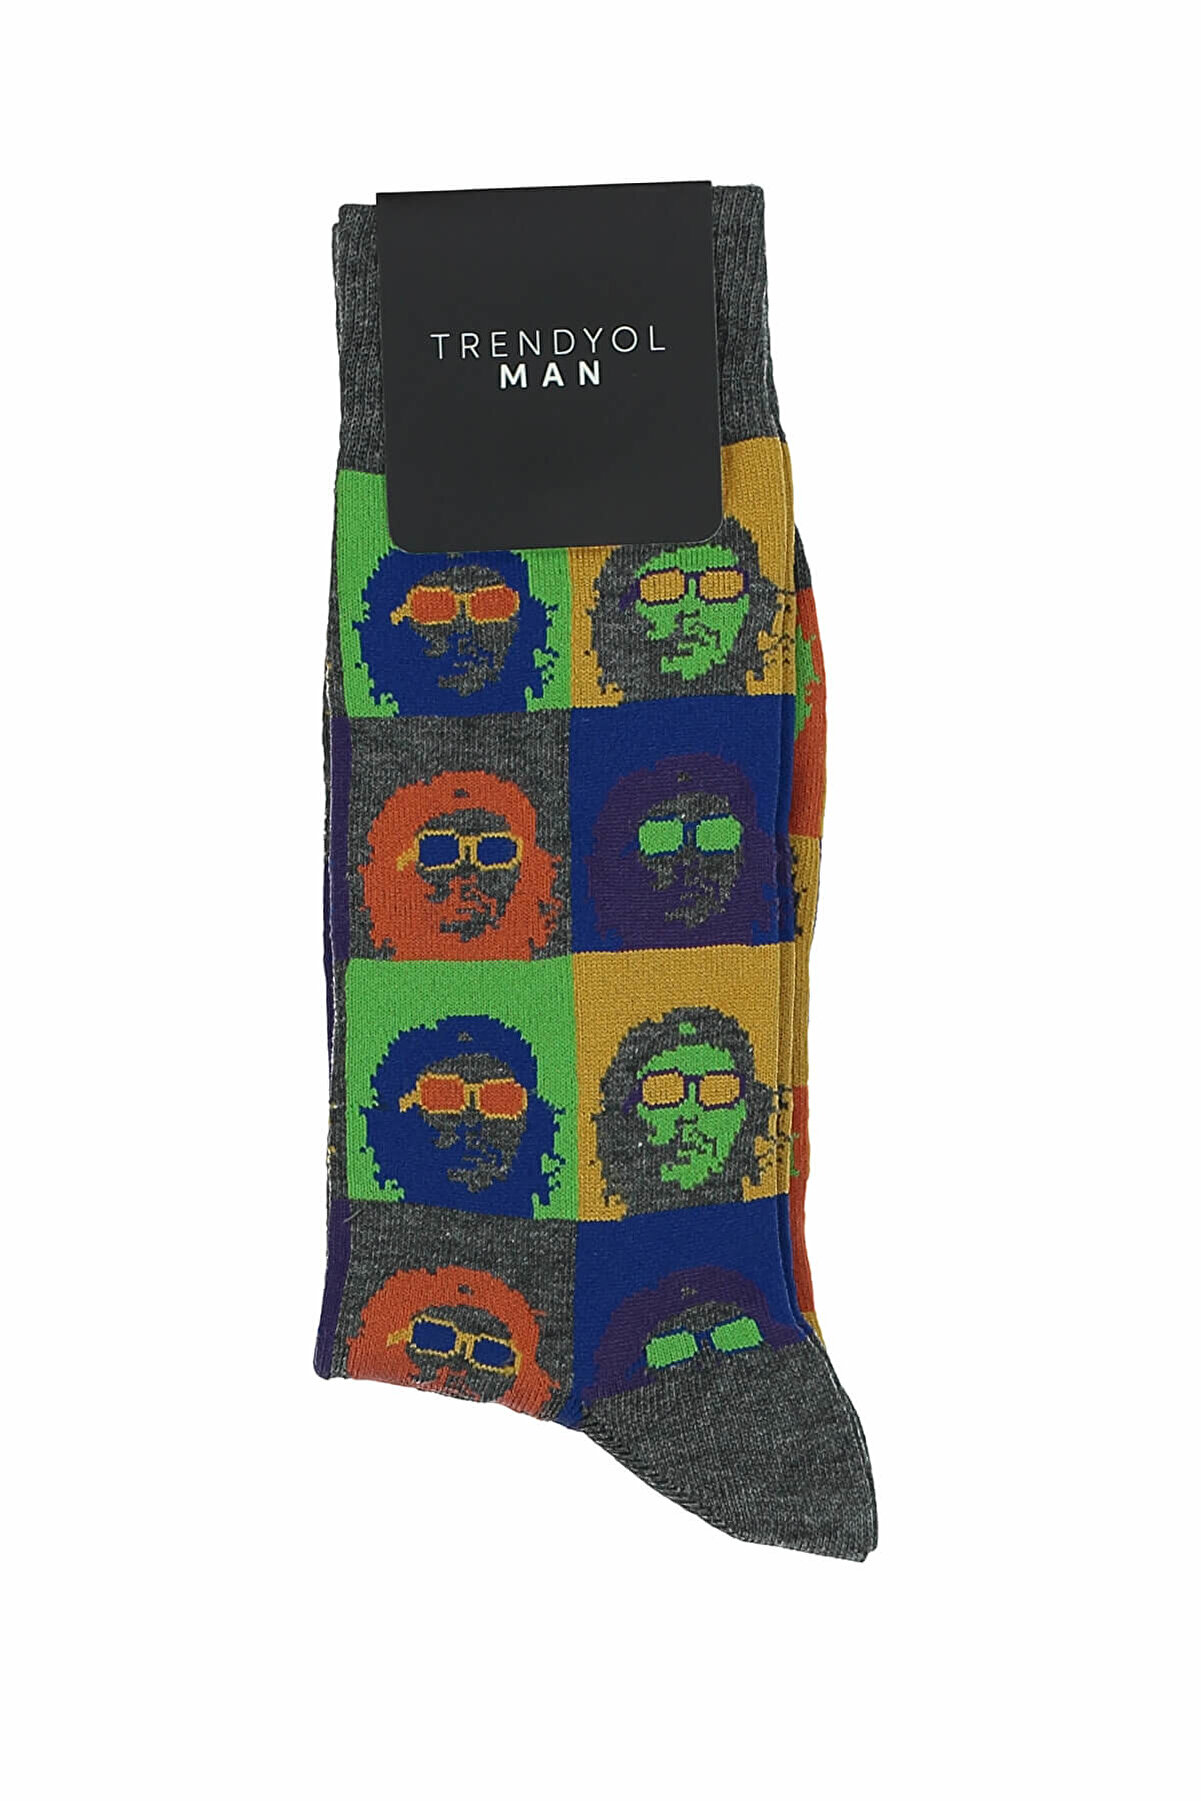 TRENDYOL MAN Gri Erkek Çorap - İnsan Figürlü Çok Renkli